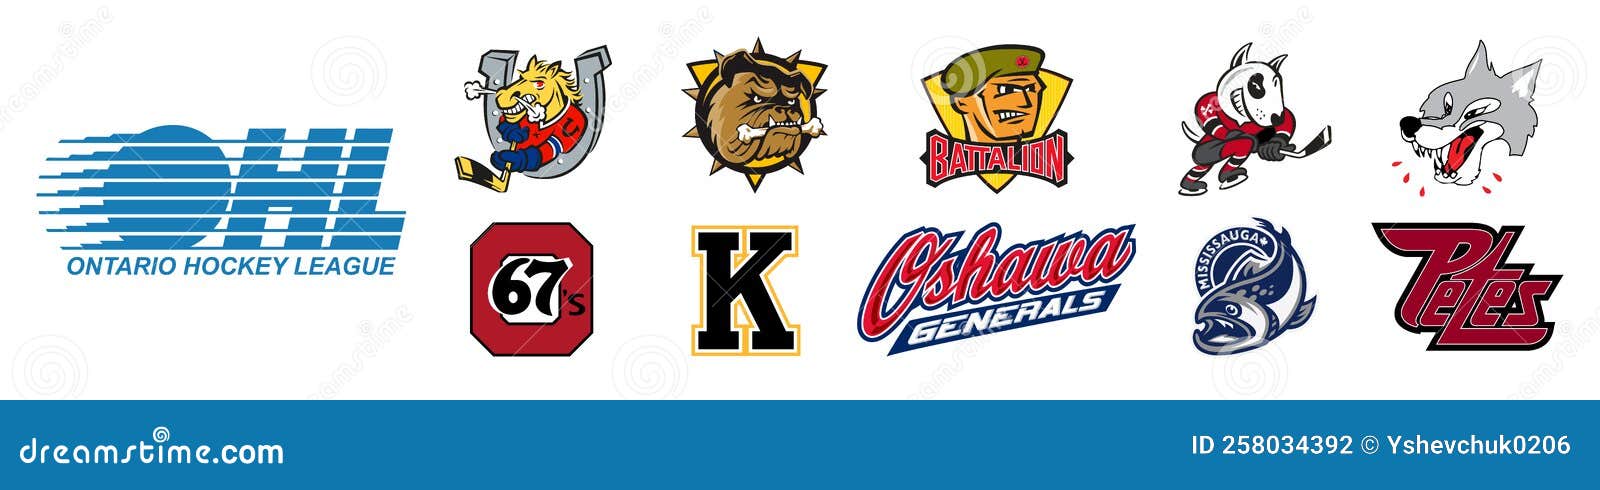 2022-23 OHL season preview, Ontario Hockey League